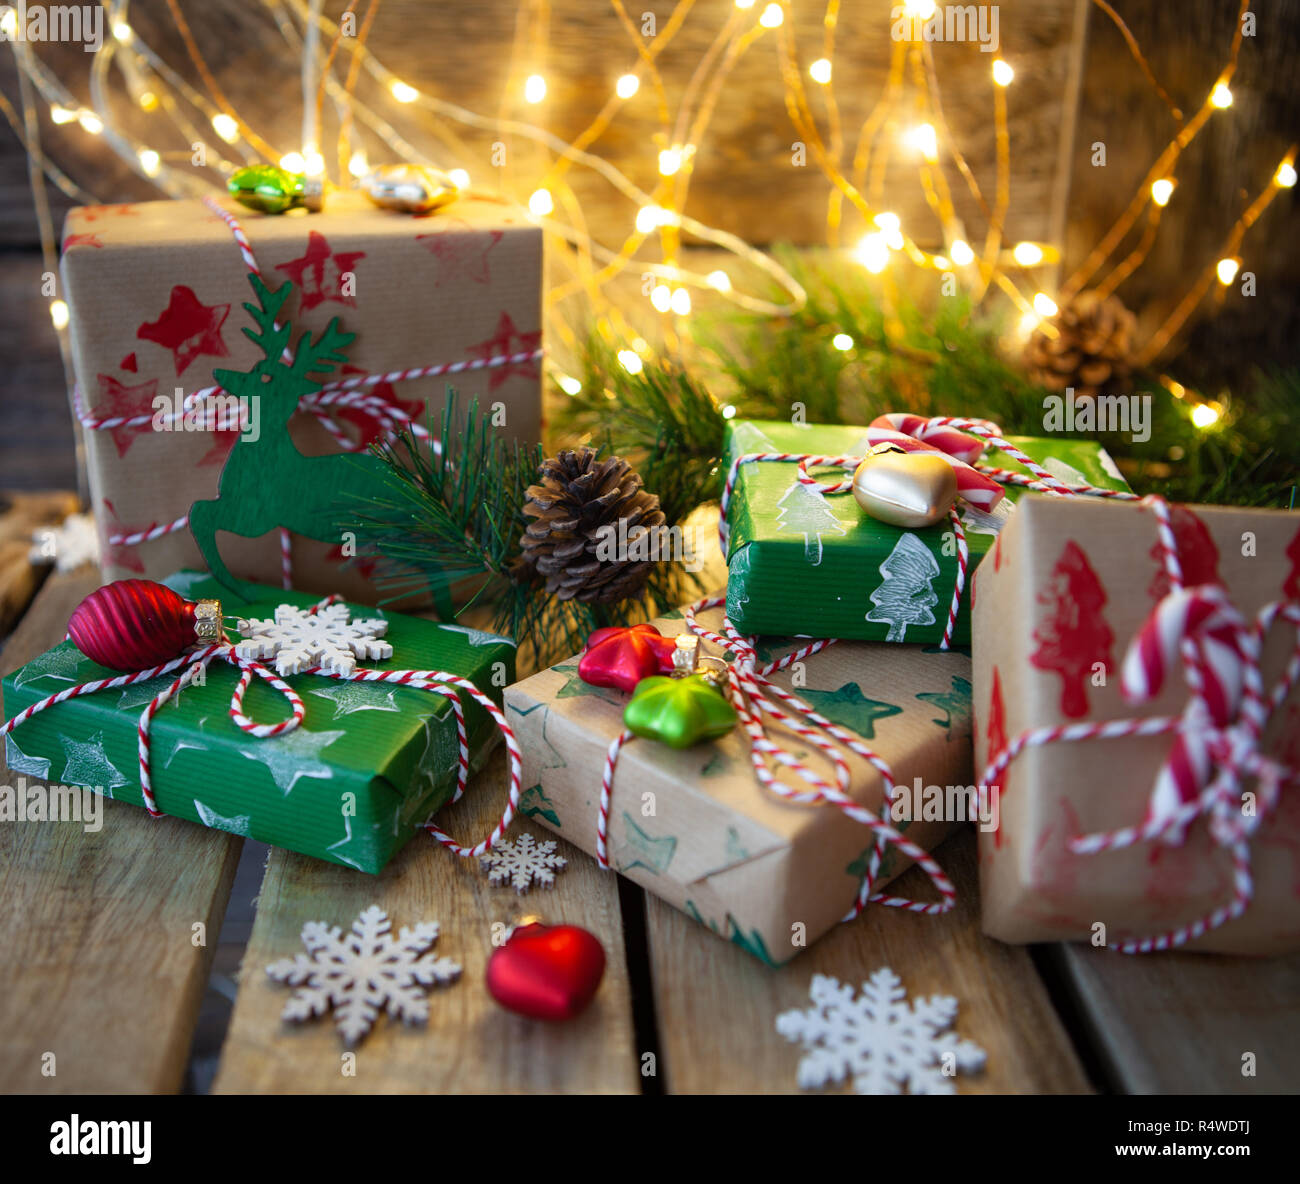 Poco envuelto regalos y luces festivas para una Feliz Navidad / Felices Fiestas. Foto de stock